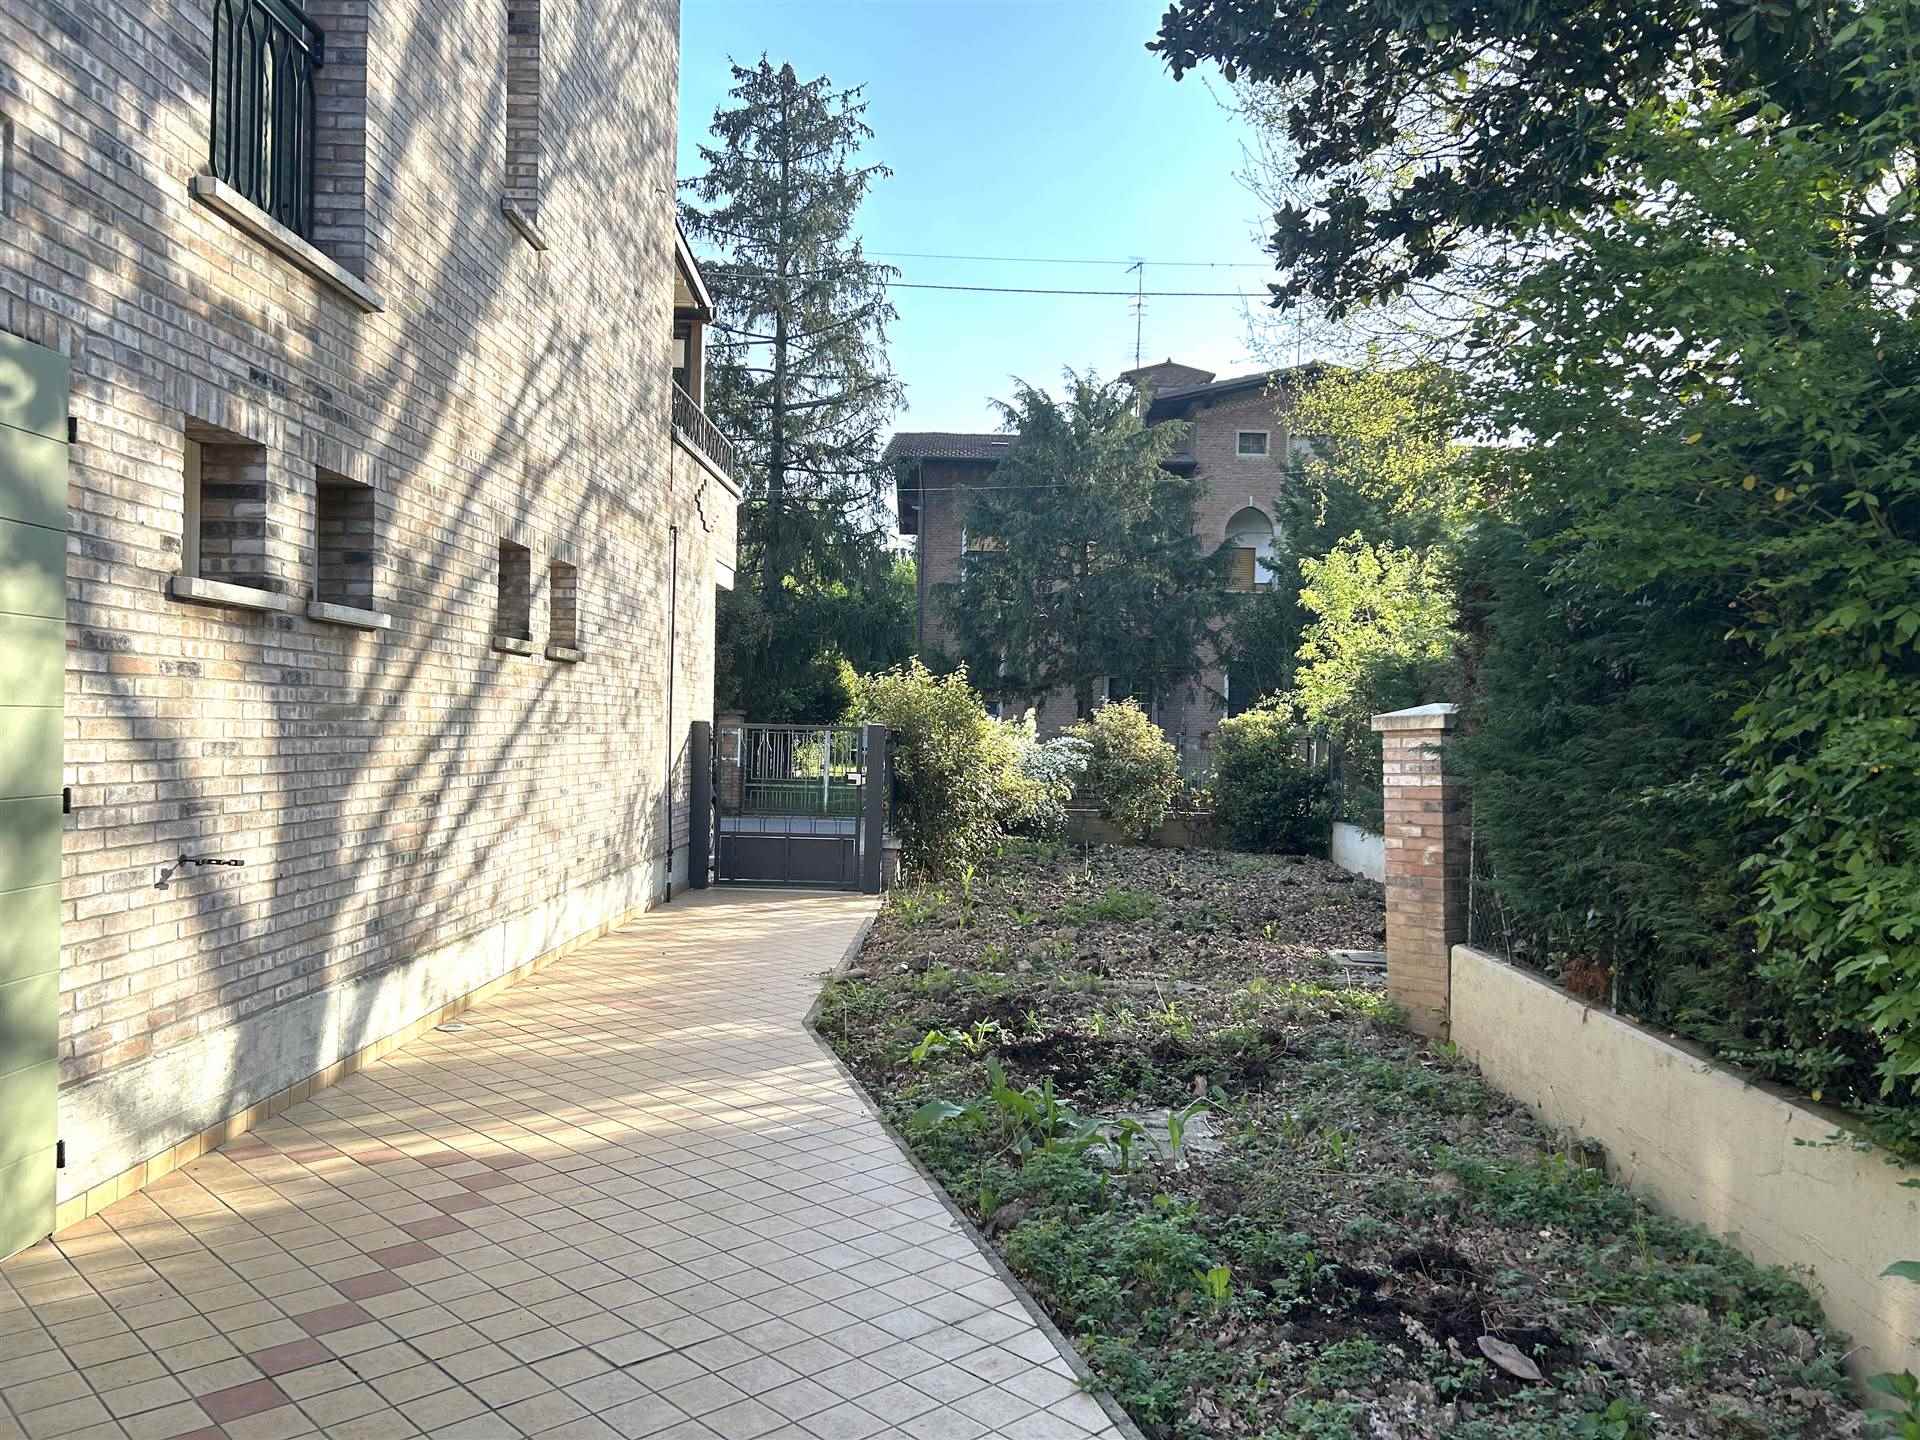 Correggio, zona centro: Ferretti Studio Immobiliare propone in vendita appartamento al piano primo in contesto abitativo di sole 3 unità edificato nel 2010. La palazzina è ubicata in zona centrale e 